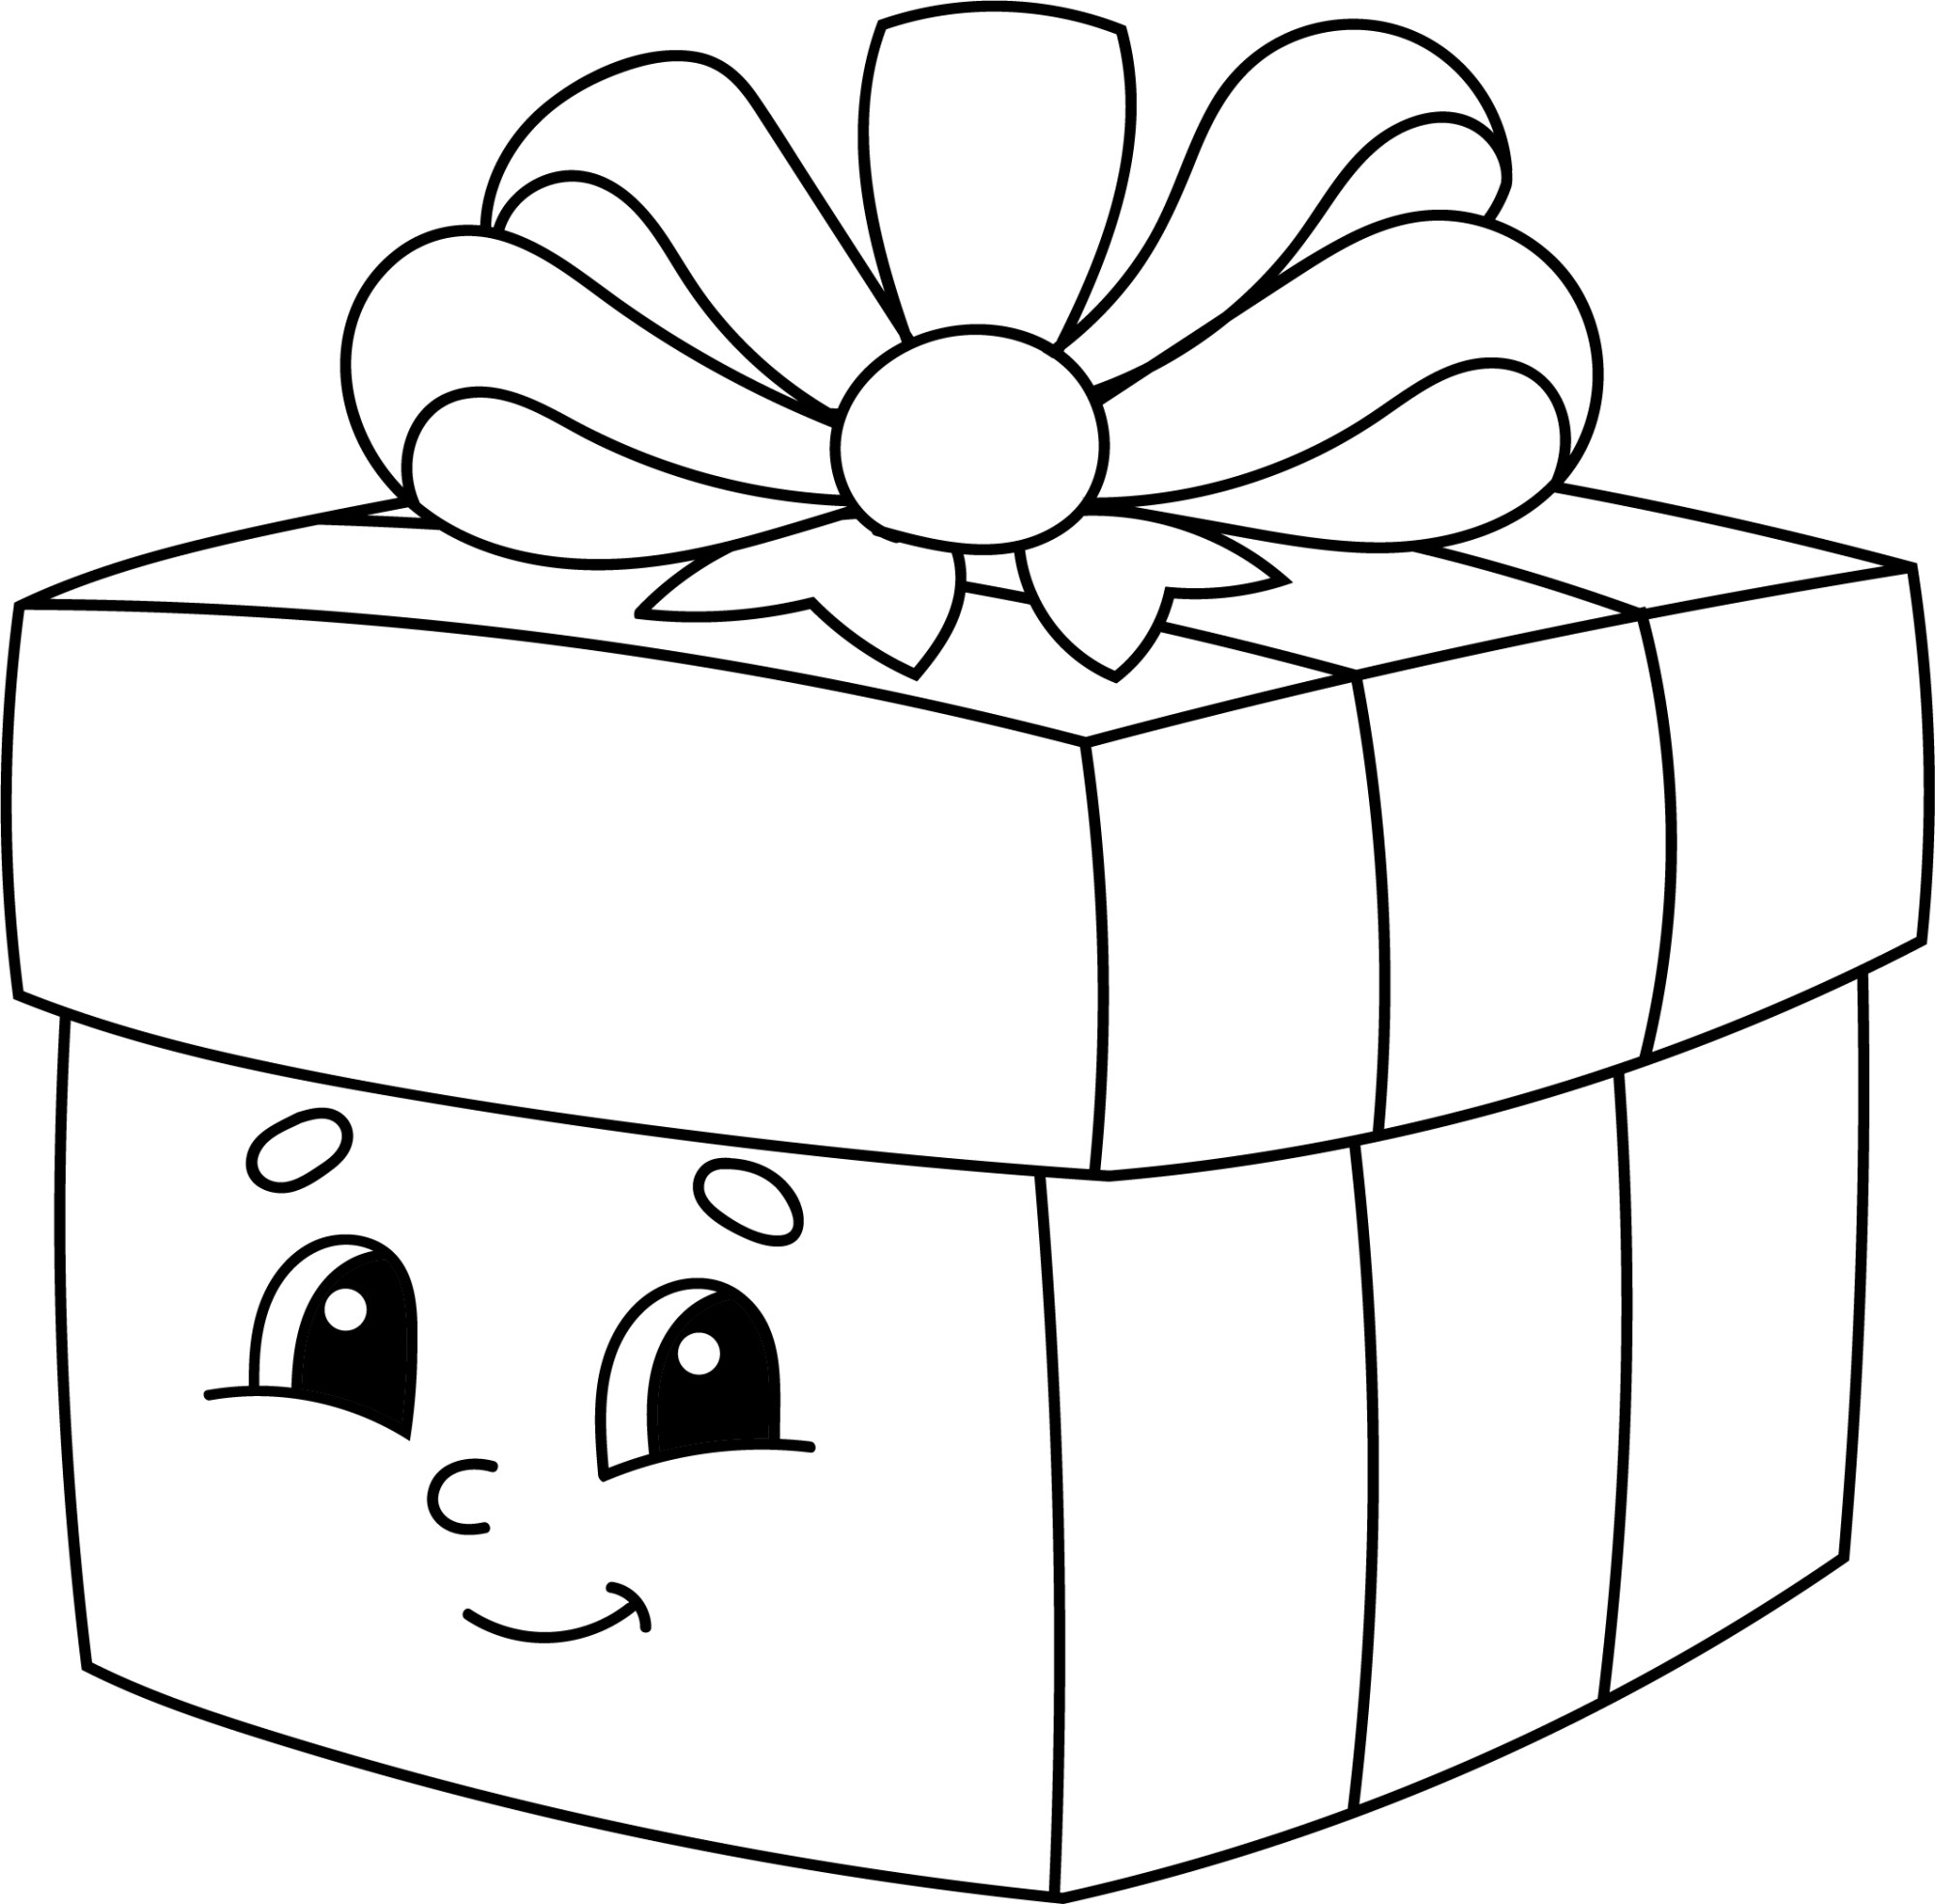 Раскраска для детей: подарочная коробка с бантиком и игрушками